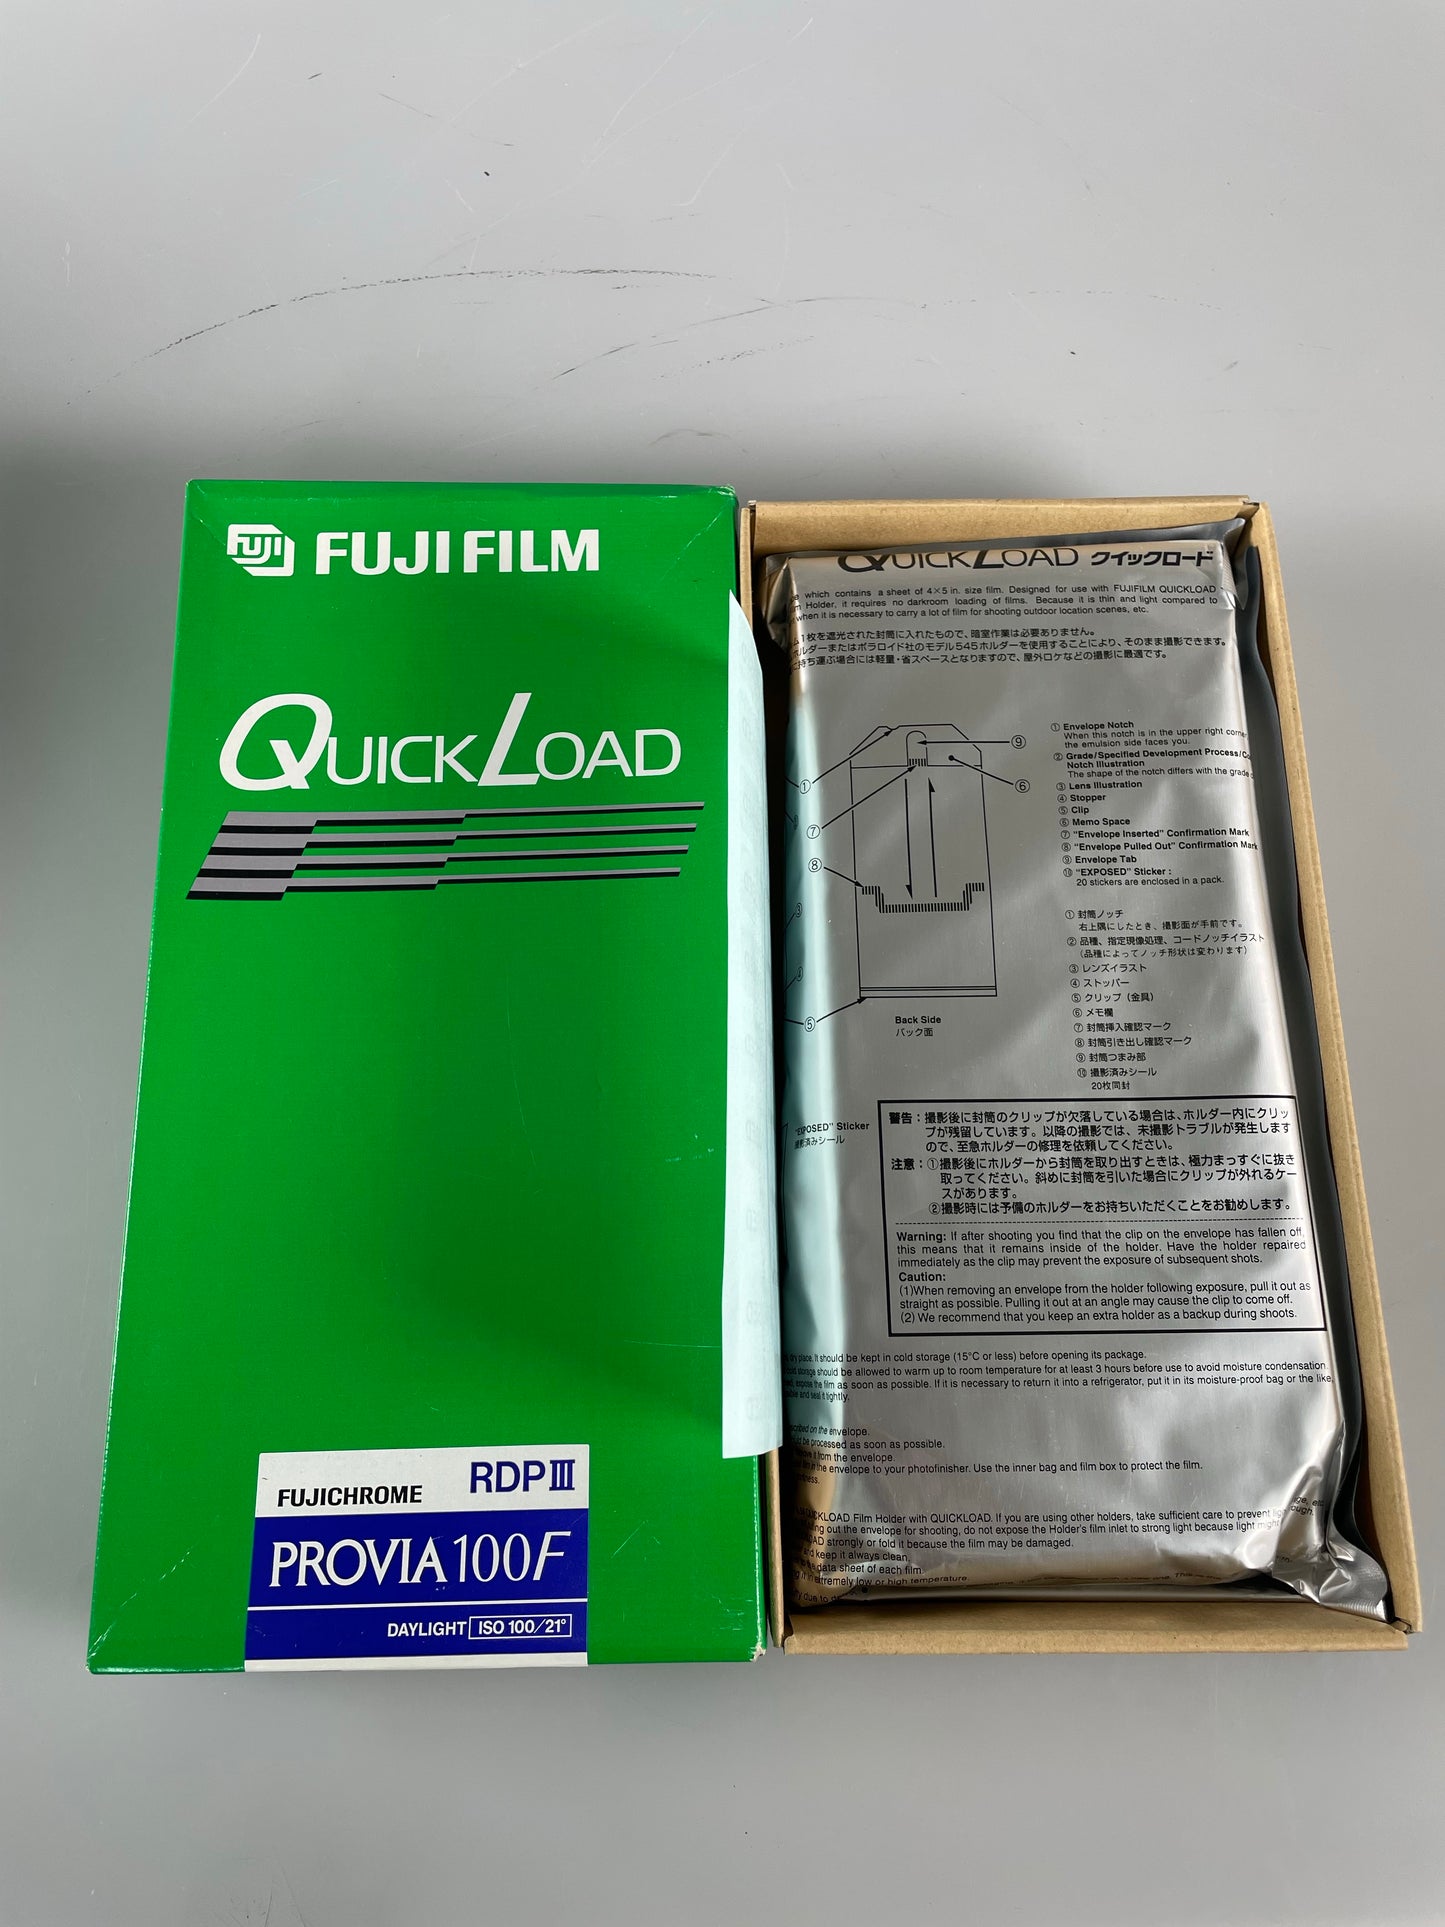 Lot of Fuji Quick Load PROVIA 100F RDPIII 4x5 Film